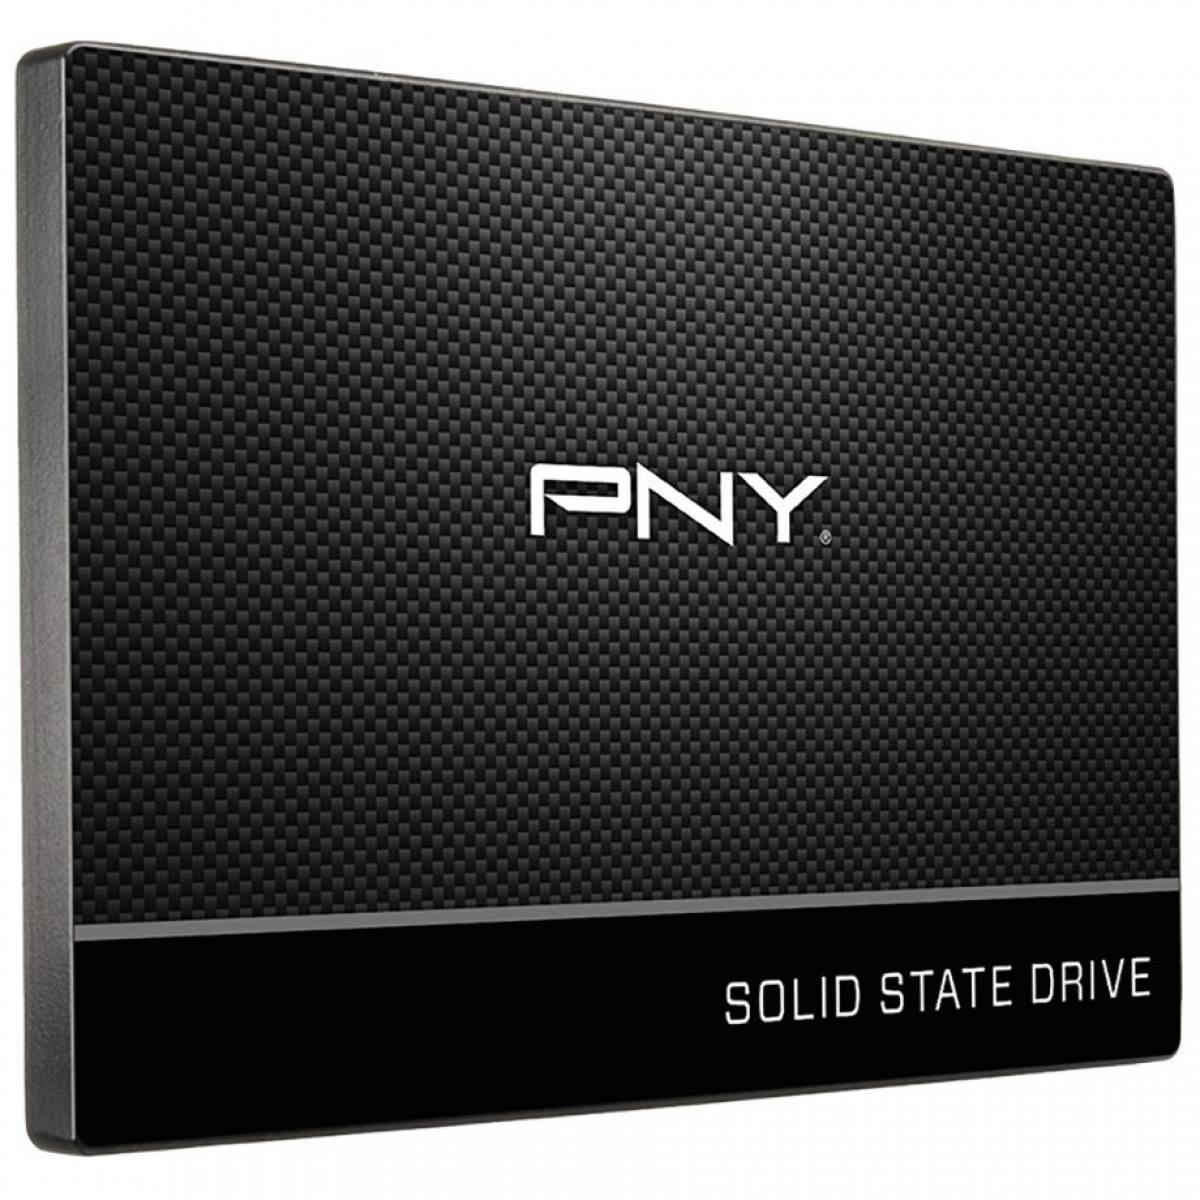 SSD PNY CS900 2.5inch 240GB TLC 